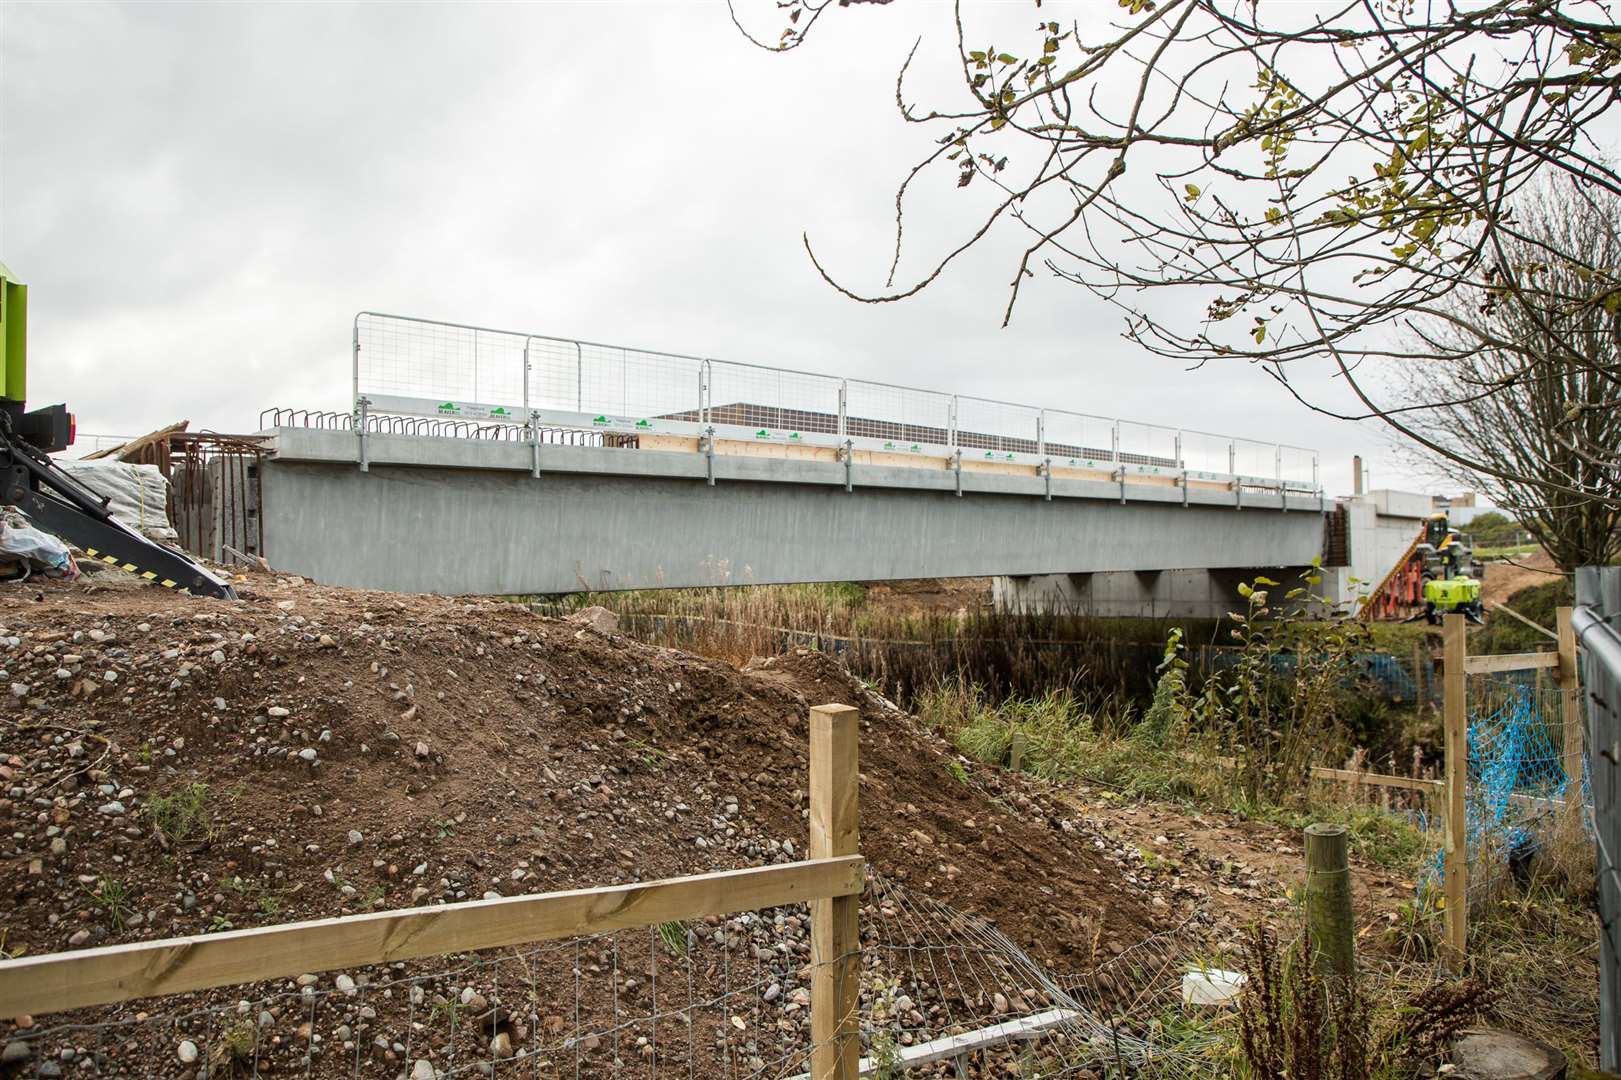 The new bridge crosses the main Inverness to Perth rail line.